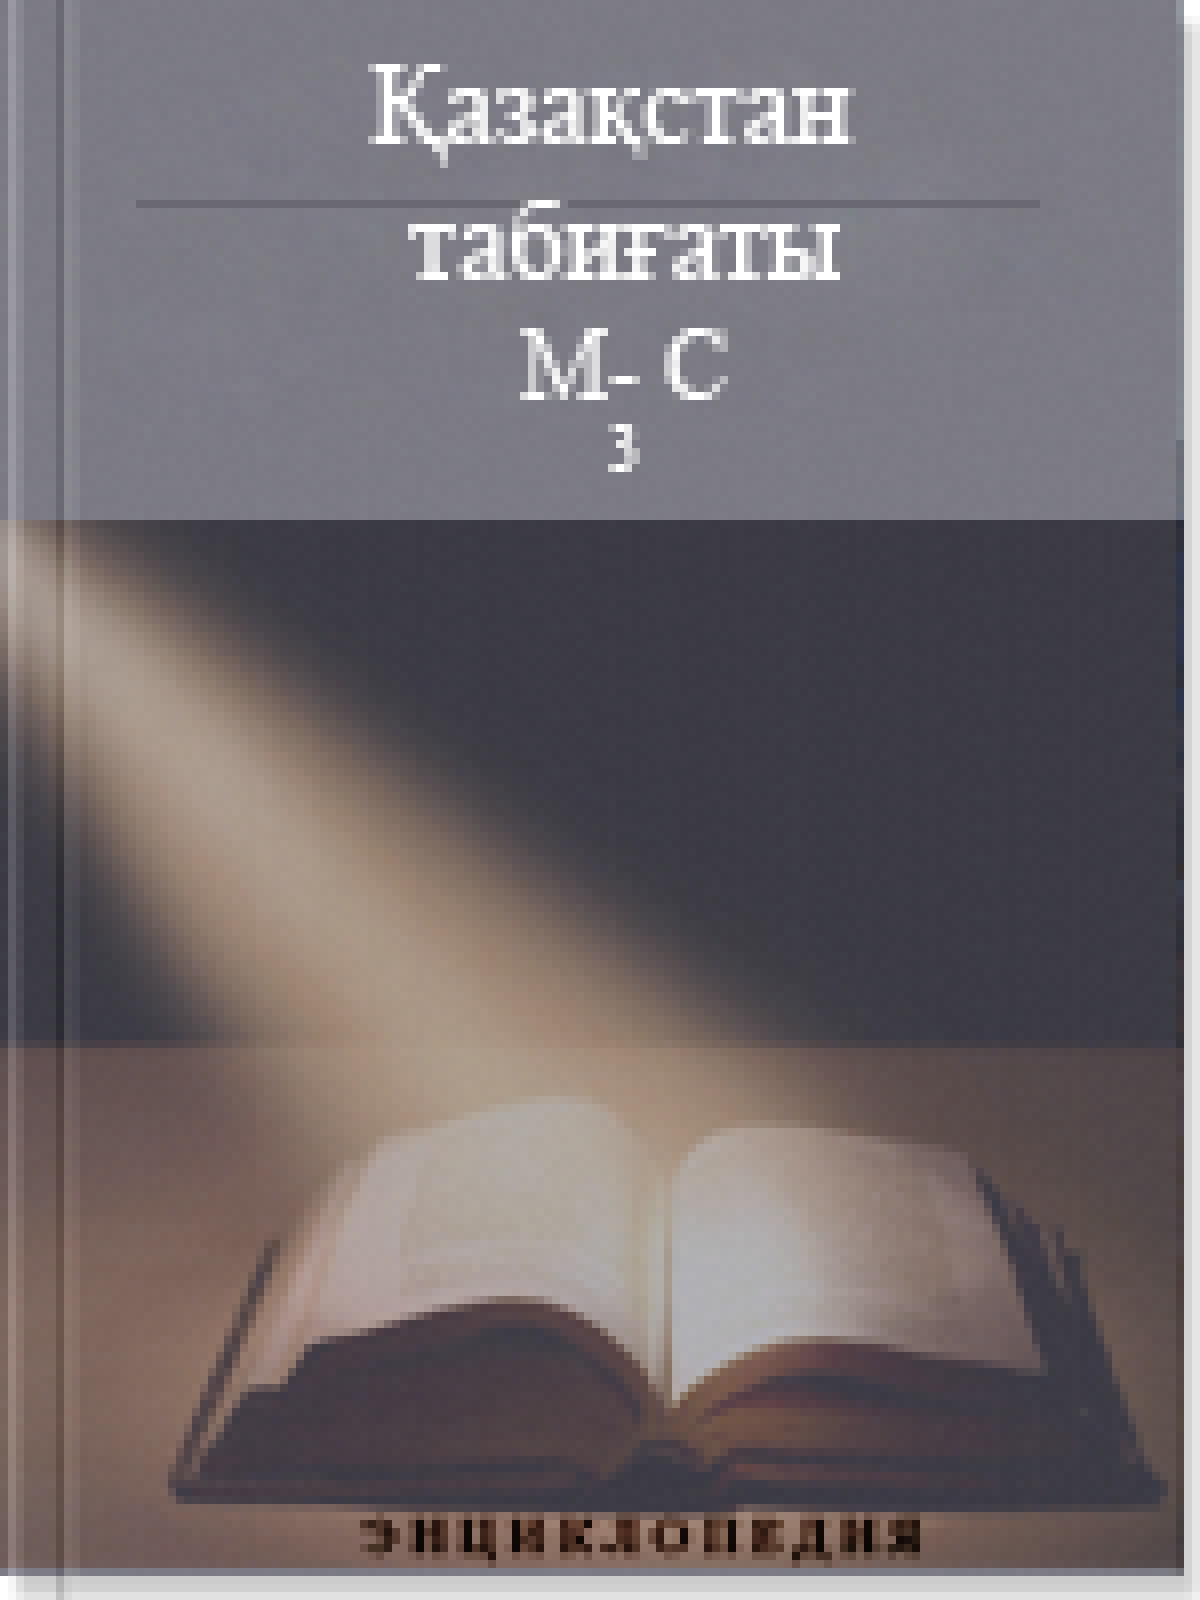 Қазақстан табиғаты 4 том М-С (3)